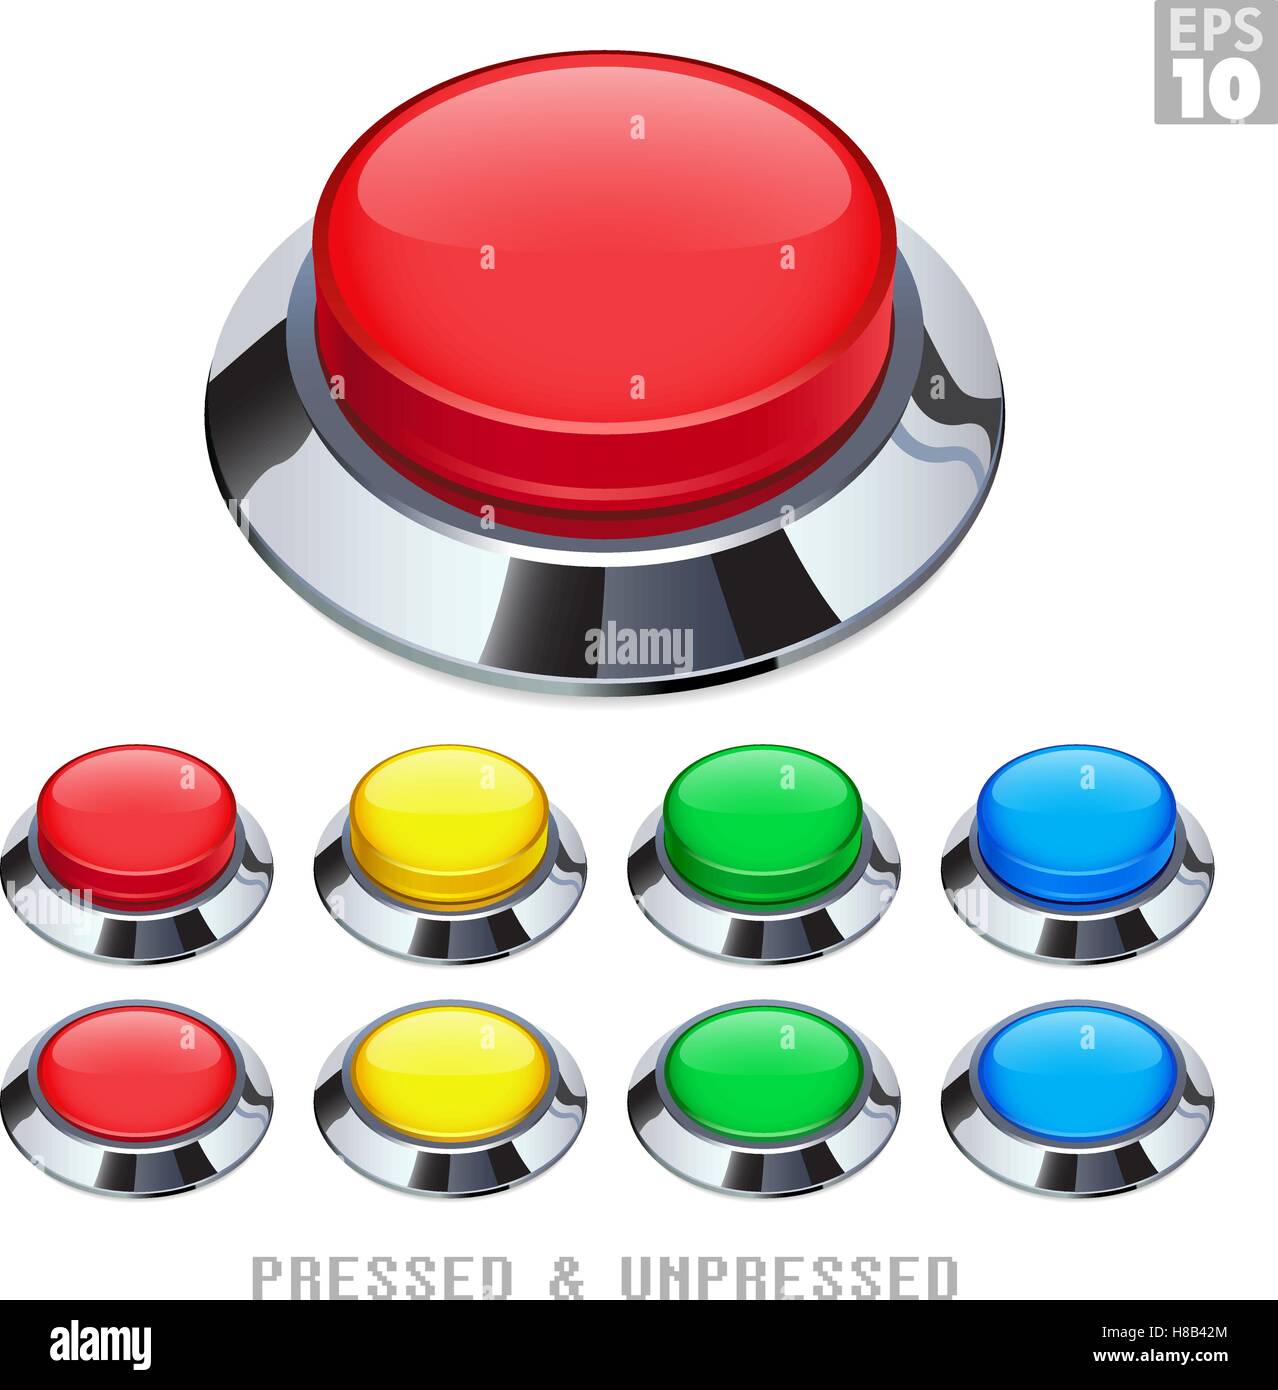 Les boutons-poussoirs d'arcade avec enjoliveur chromé appuyé et différentes couleurs de vache Illustration de Vecteur